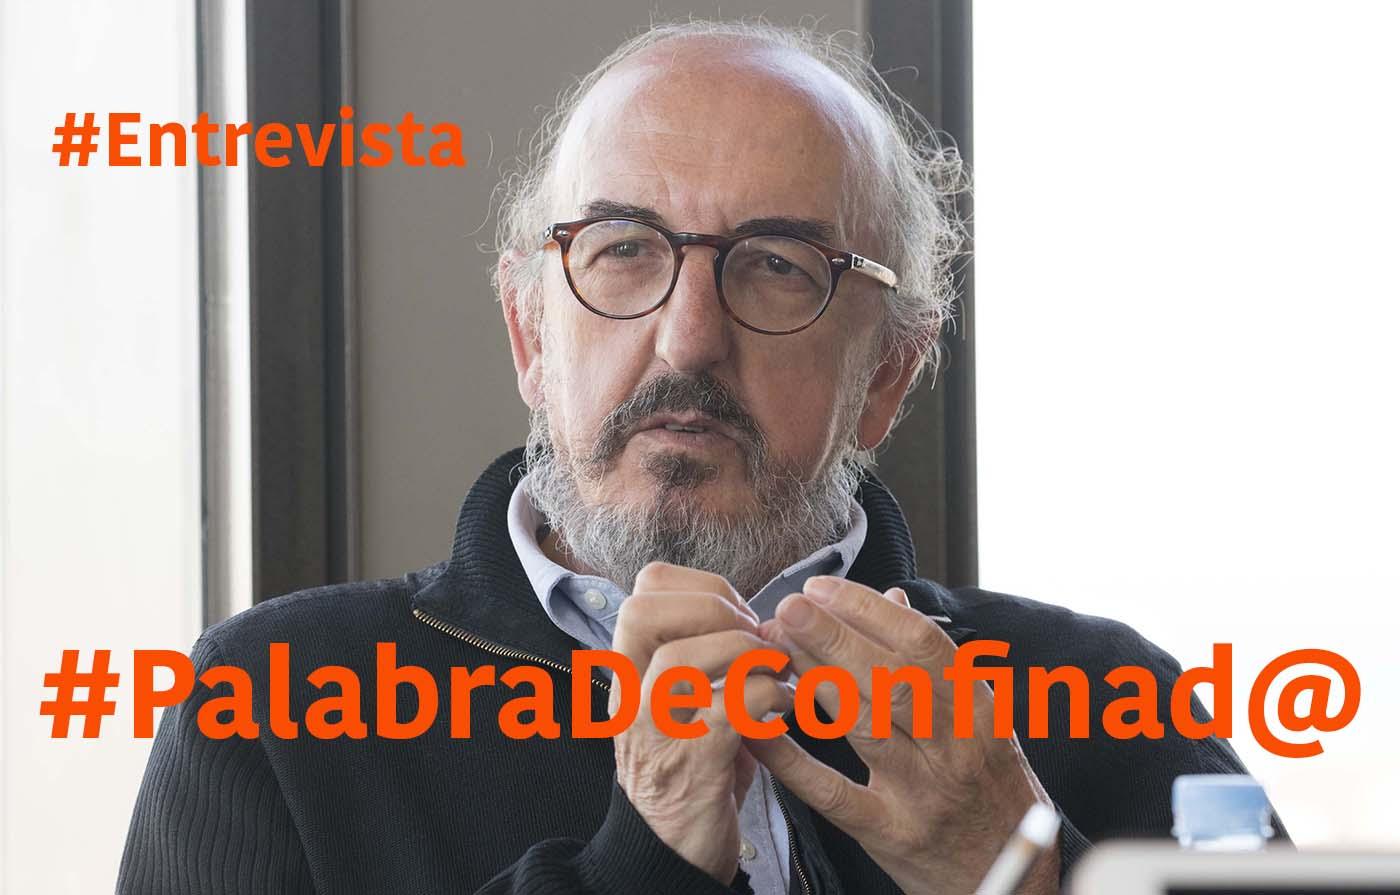 Jaume Roures es el protagonista de una nueva entrevista #PalabrasDeConfinad@ en la que analiza los efectos de la crisis del coronavirus para su empresa y, en general, para la sociedad